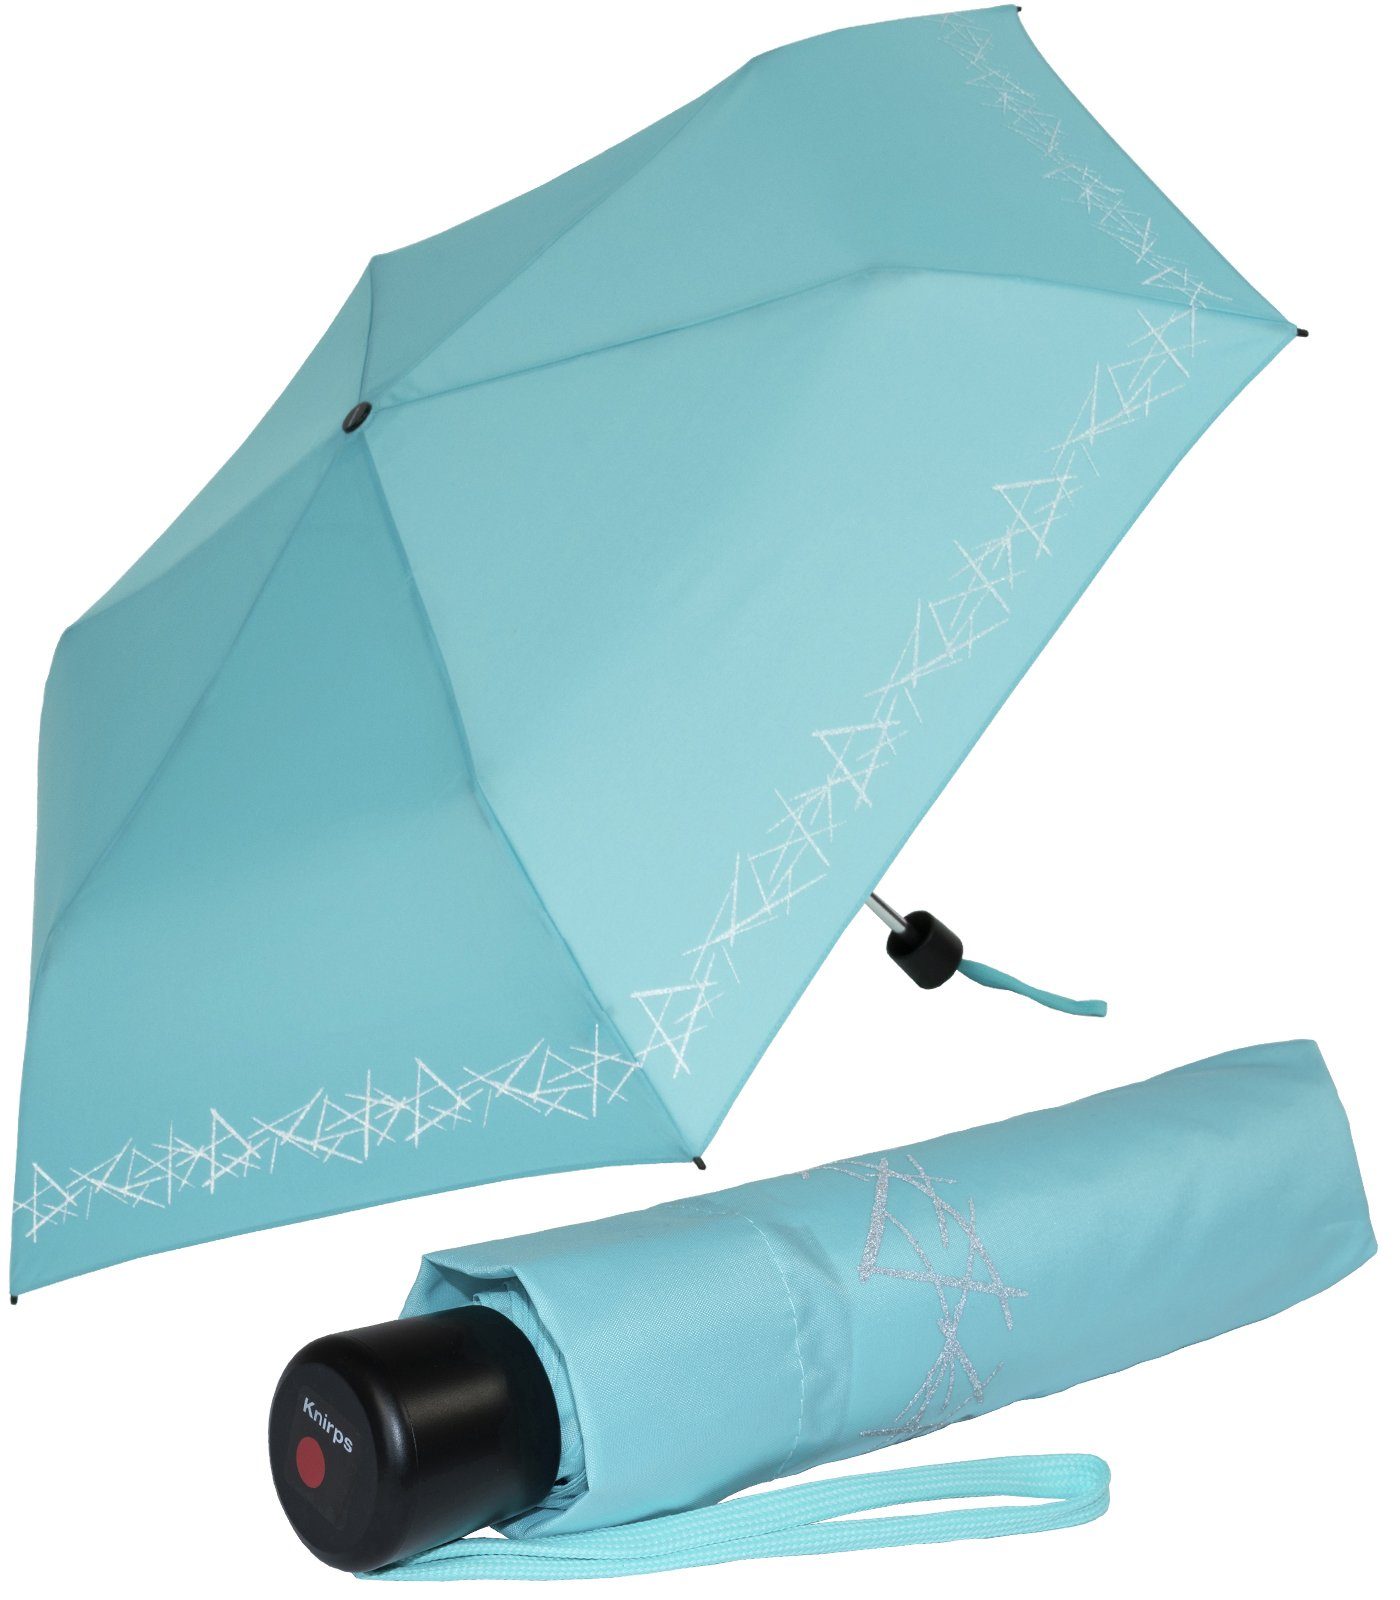 Knirps® Taschenregenschirm Kinderschirm 4Kids reflective mit Reflexborte, Sicherheit auf dem Schulweg, leicht, uni, capri hellblau